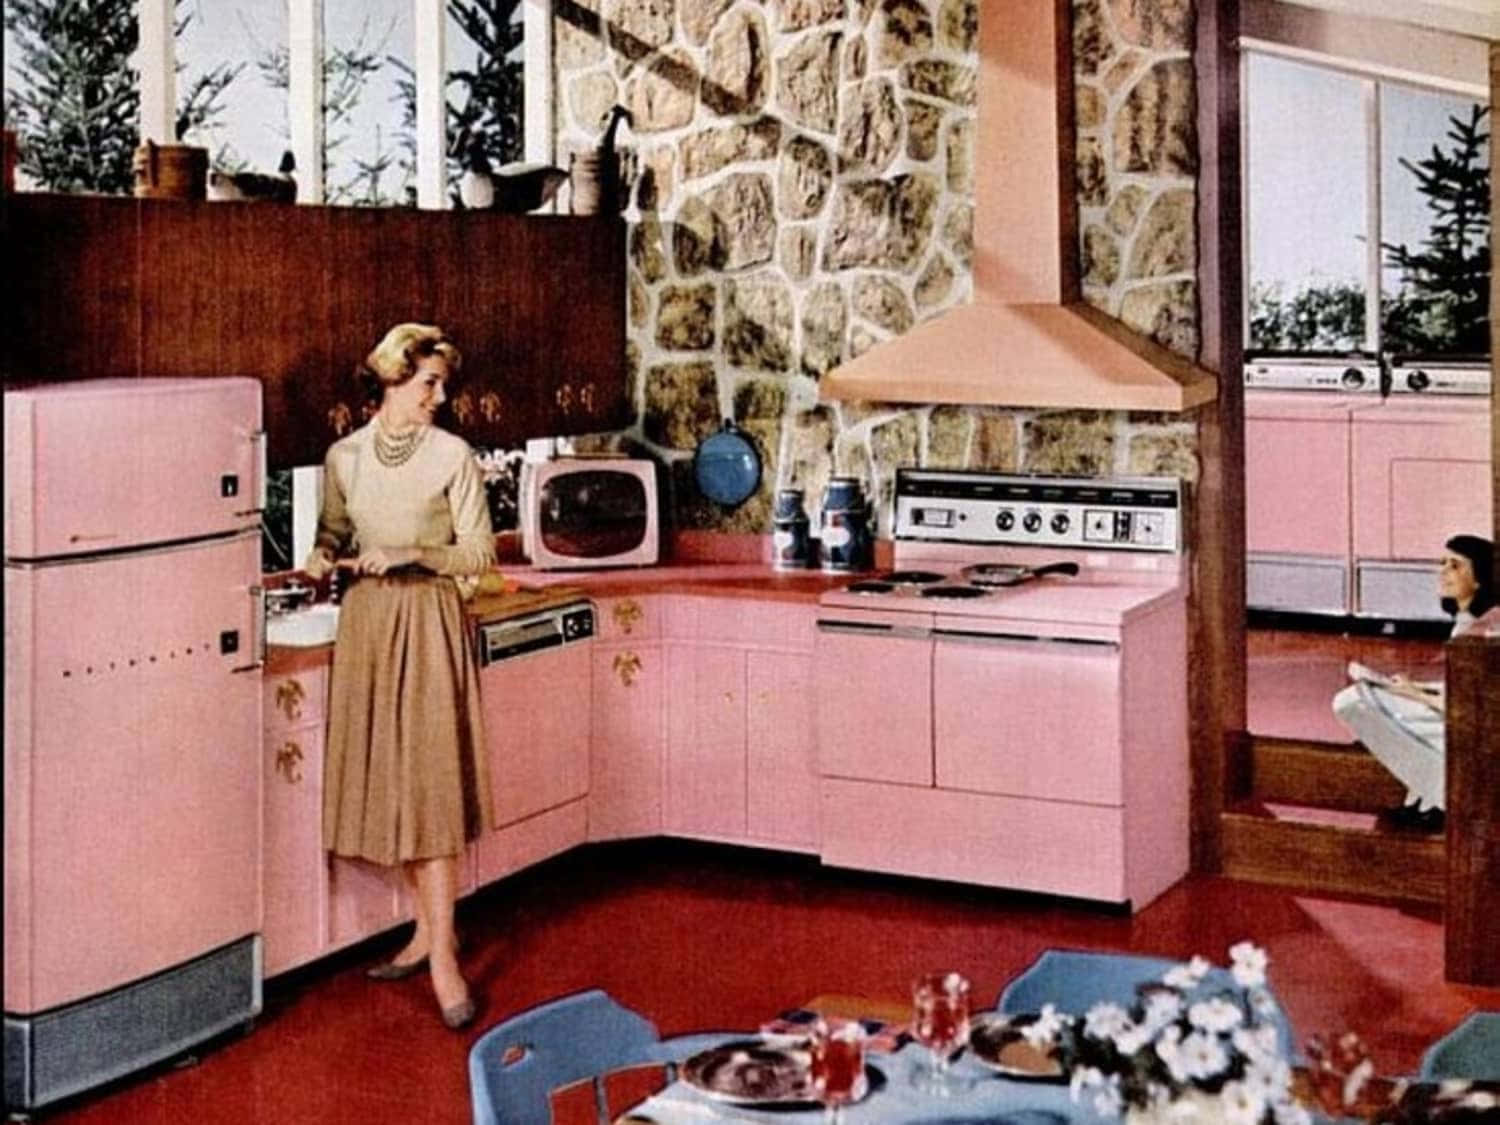 Einefrau Steht In Einer Küche Mit Pinken Geräten.